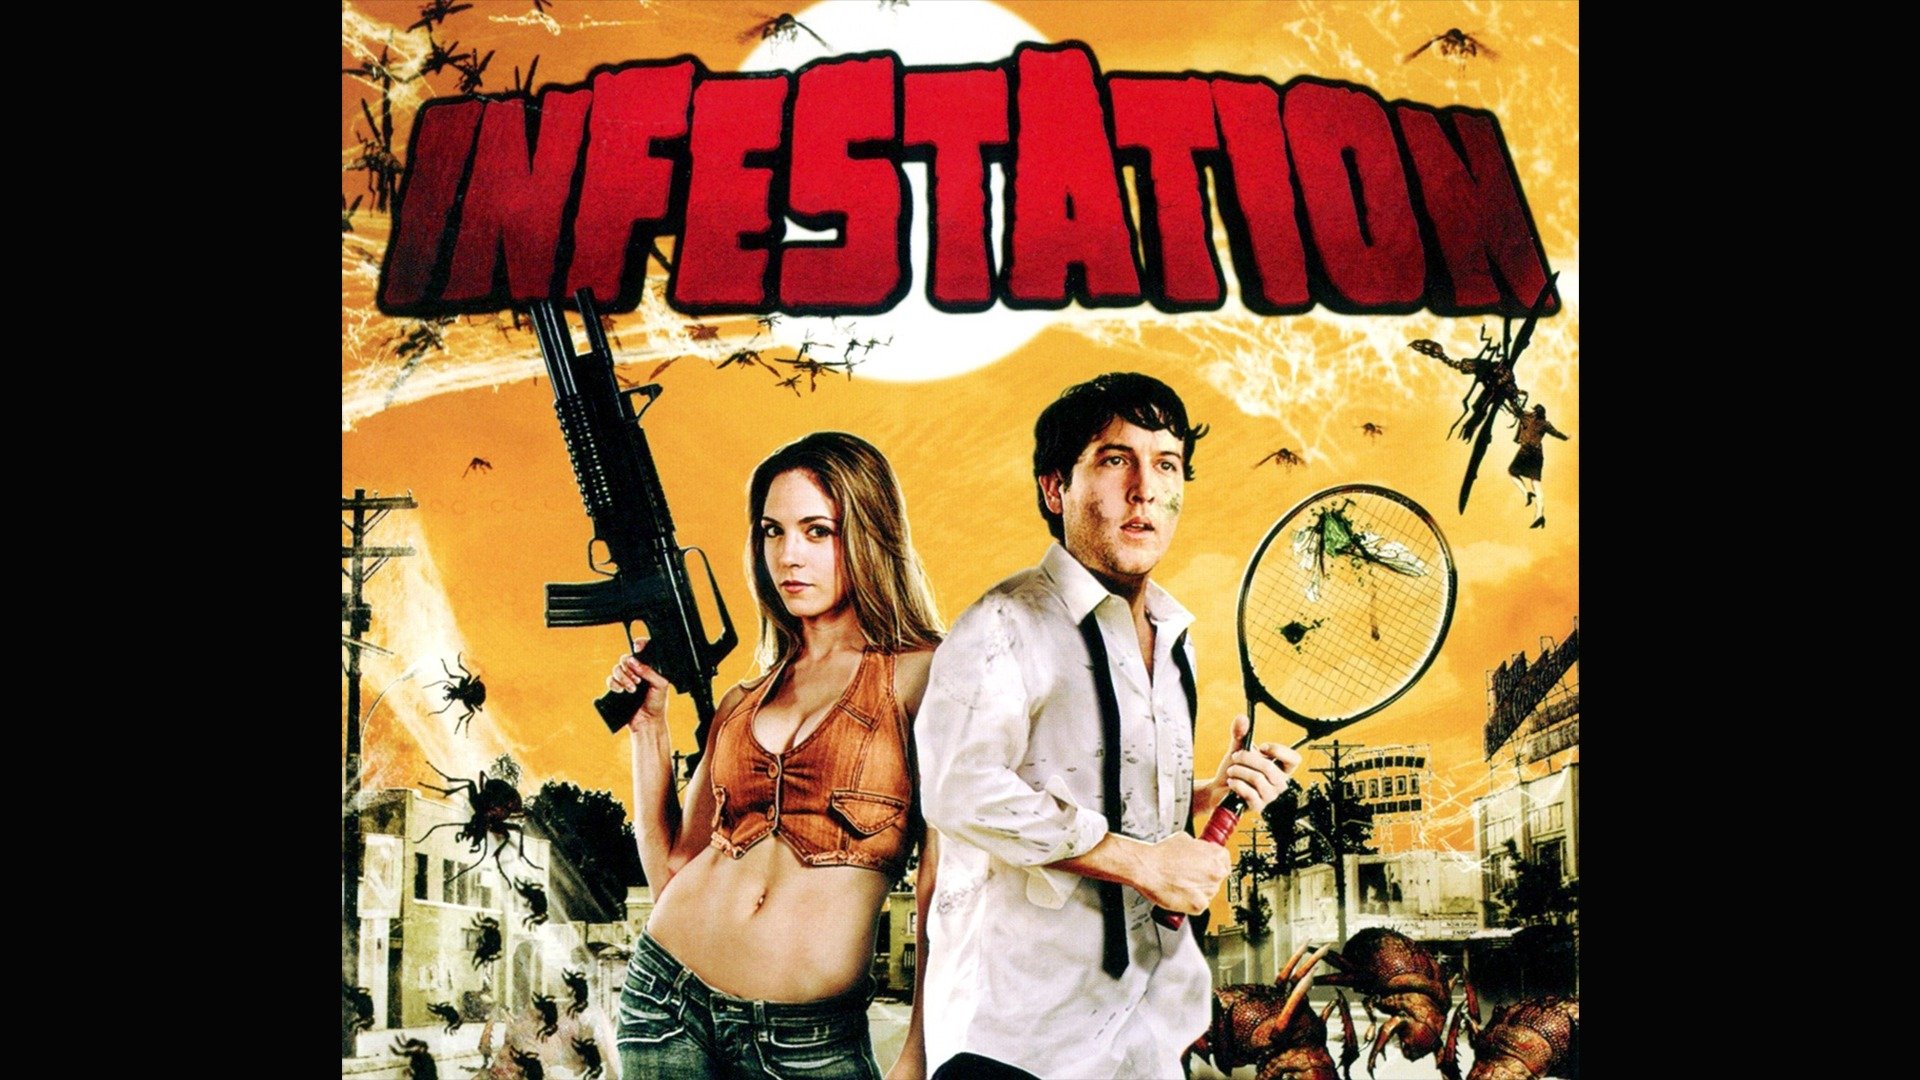 infestation movie